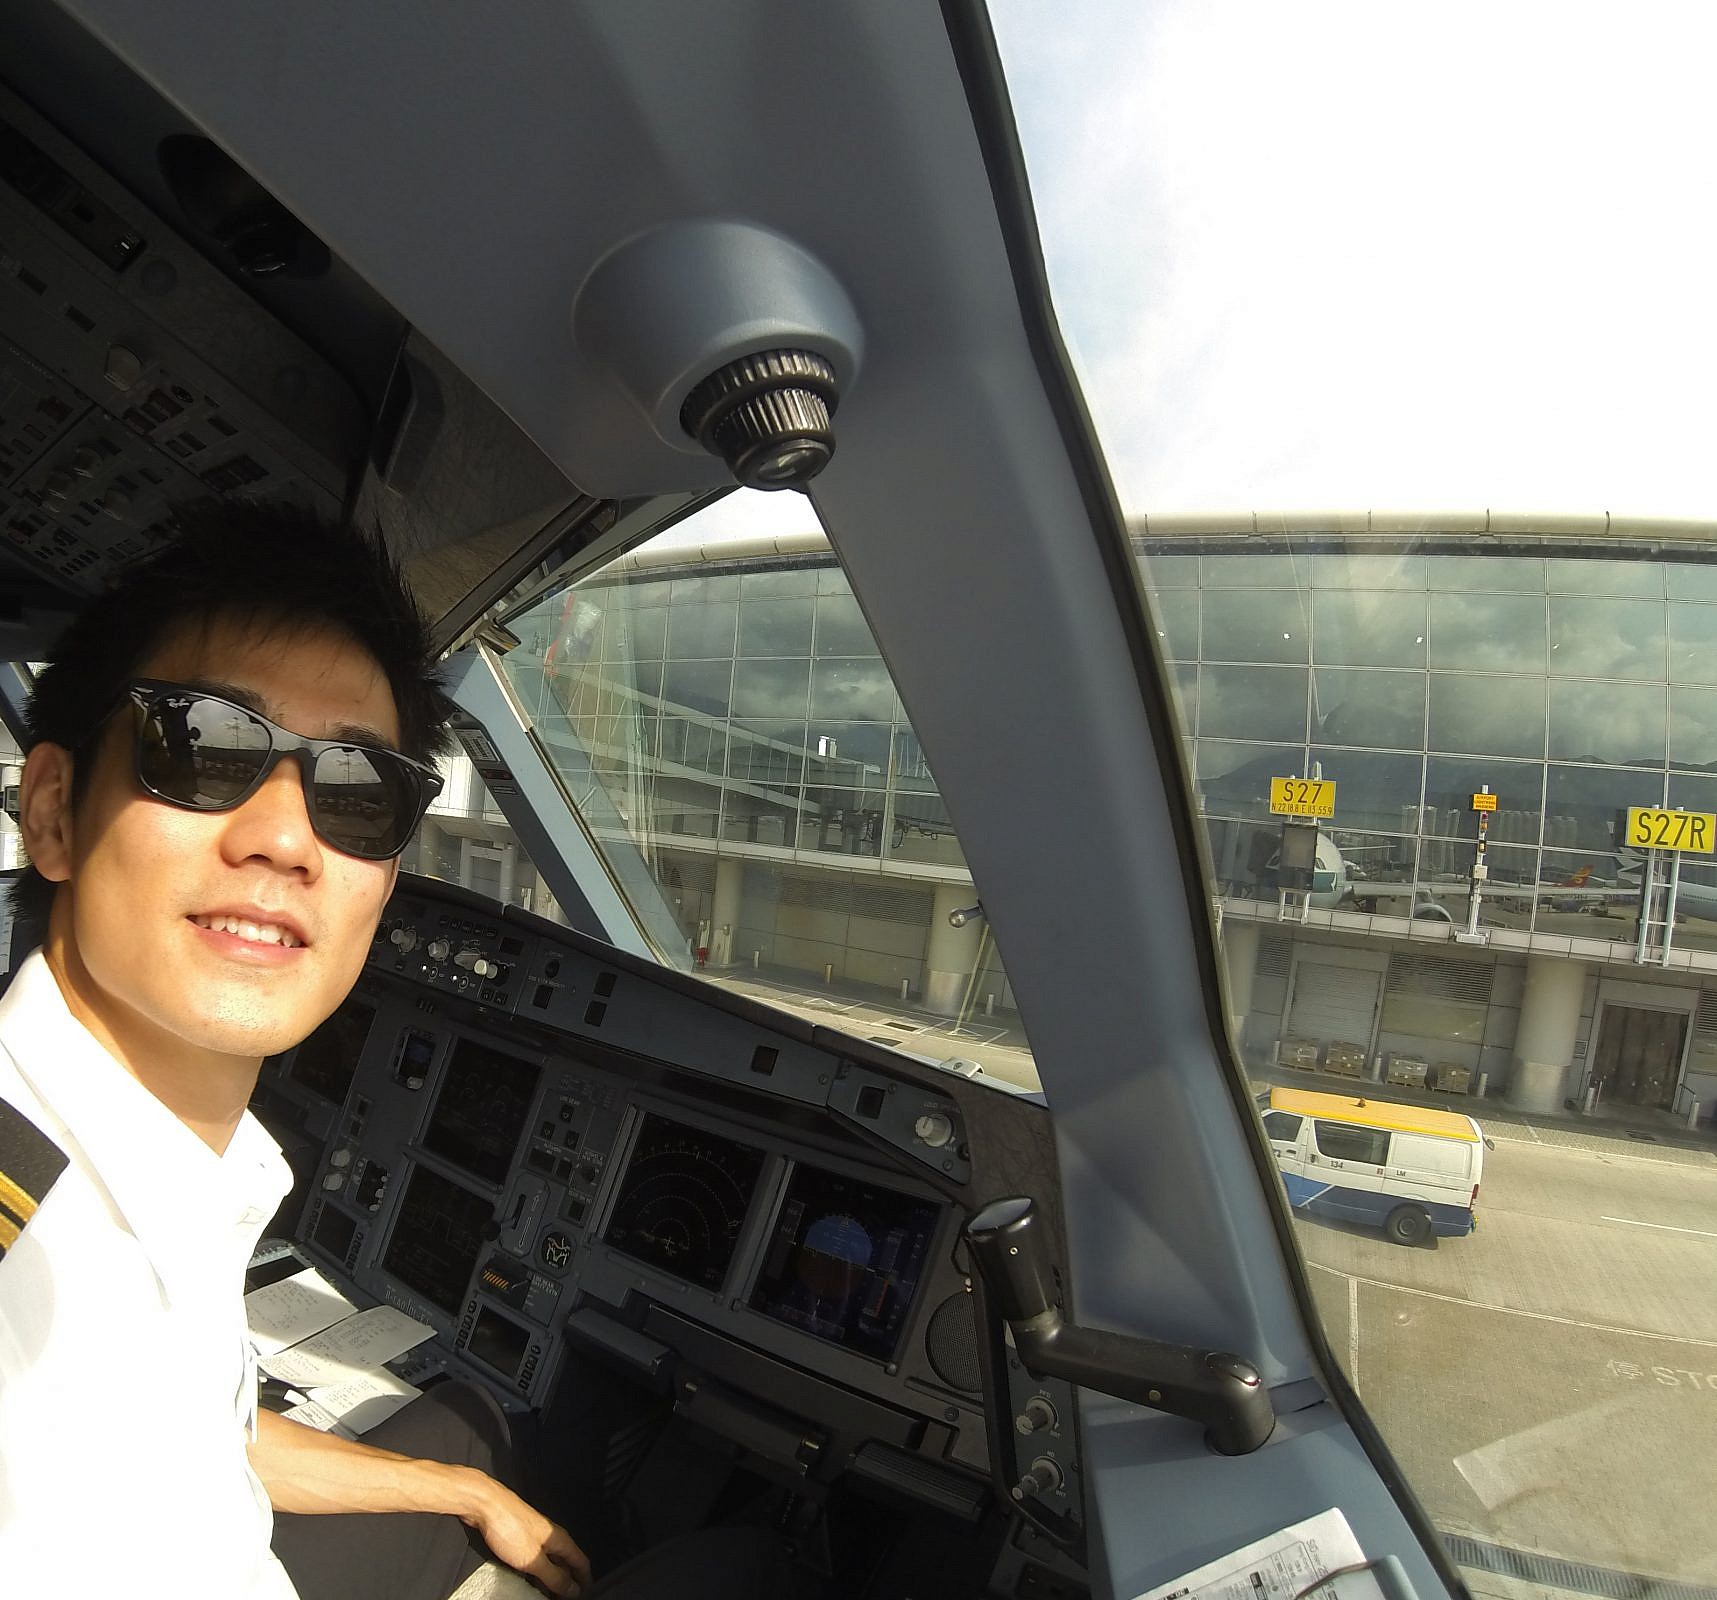 “พี่เค้าใช้แอปอะไรนะ” สัมภาษณ์นักบินหนุ่มแห่งสายการบินระดับโลก Cathay Pacific